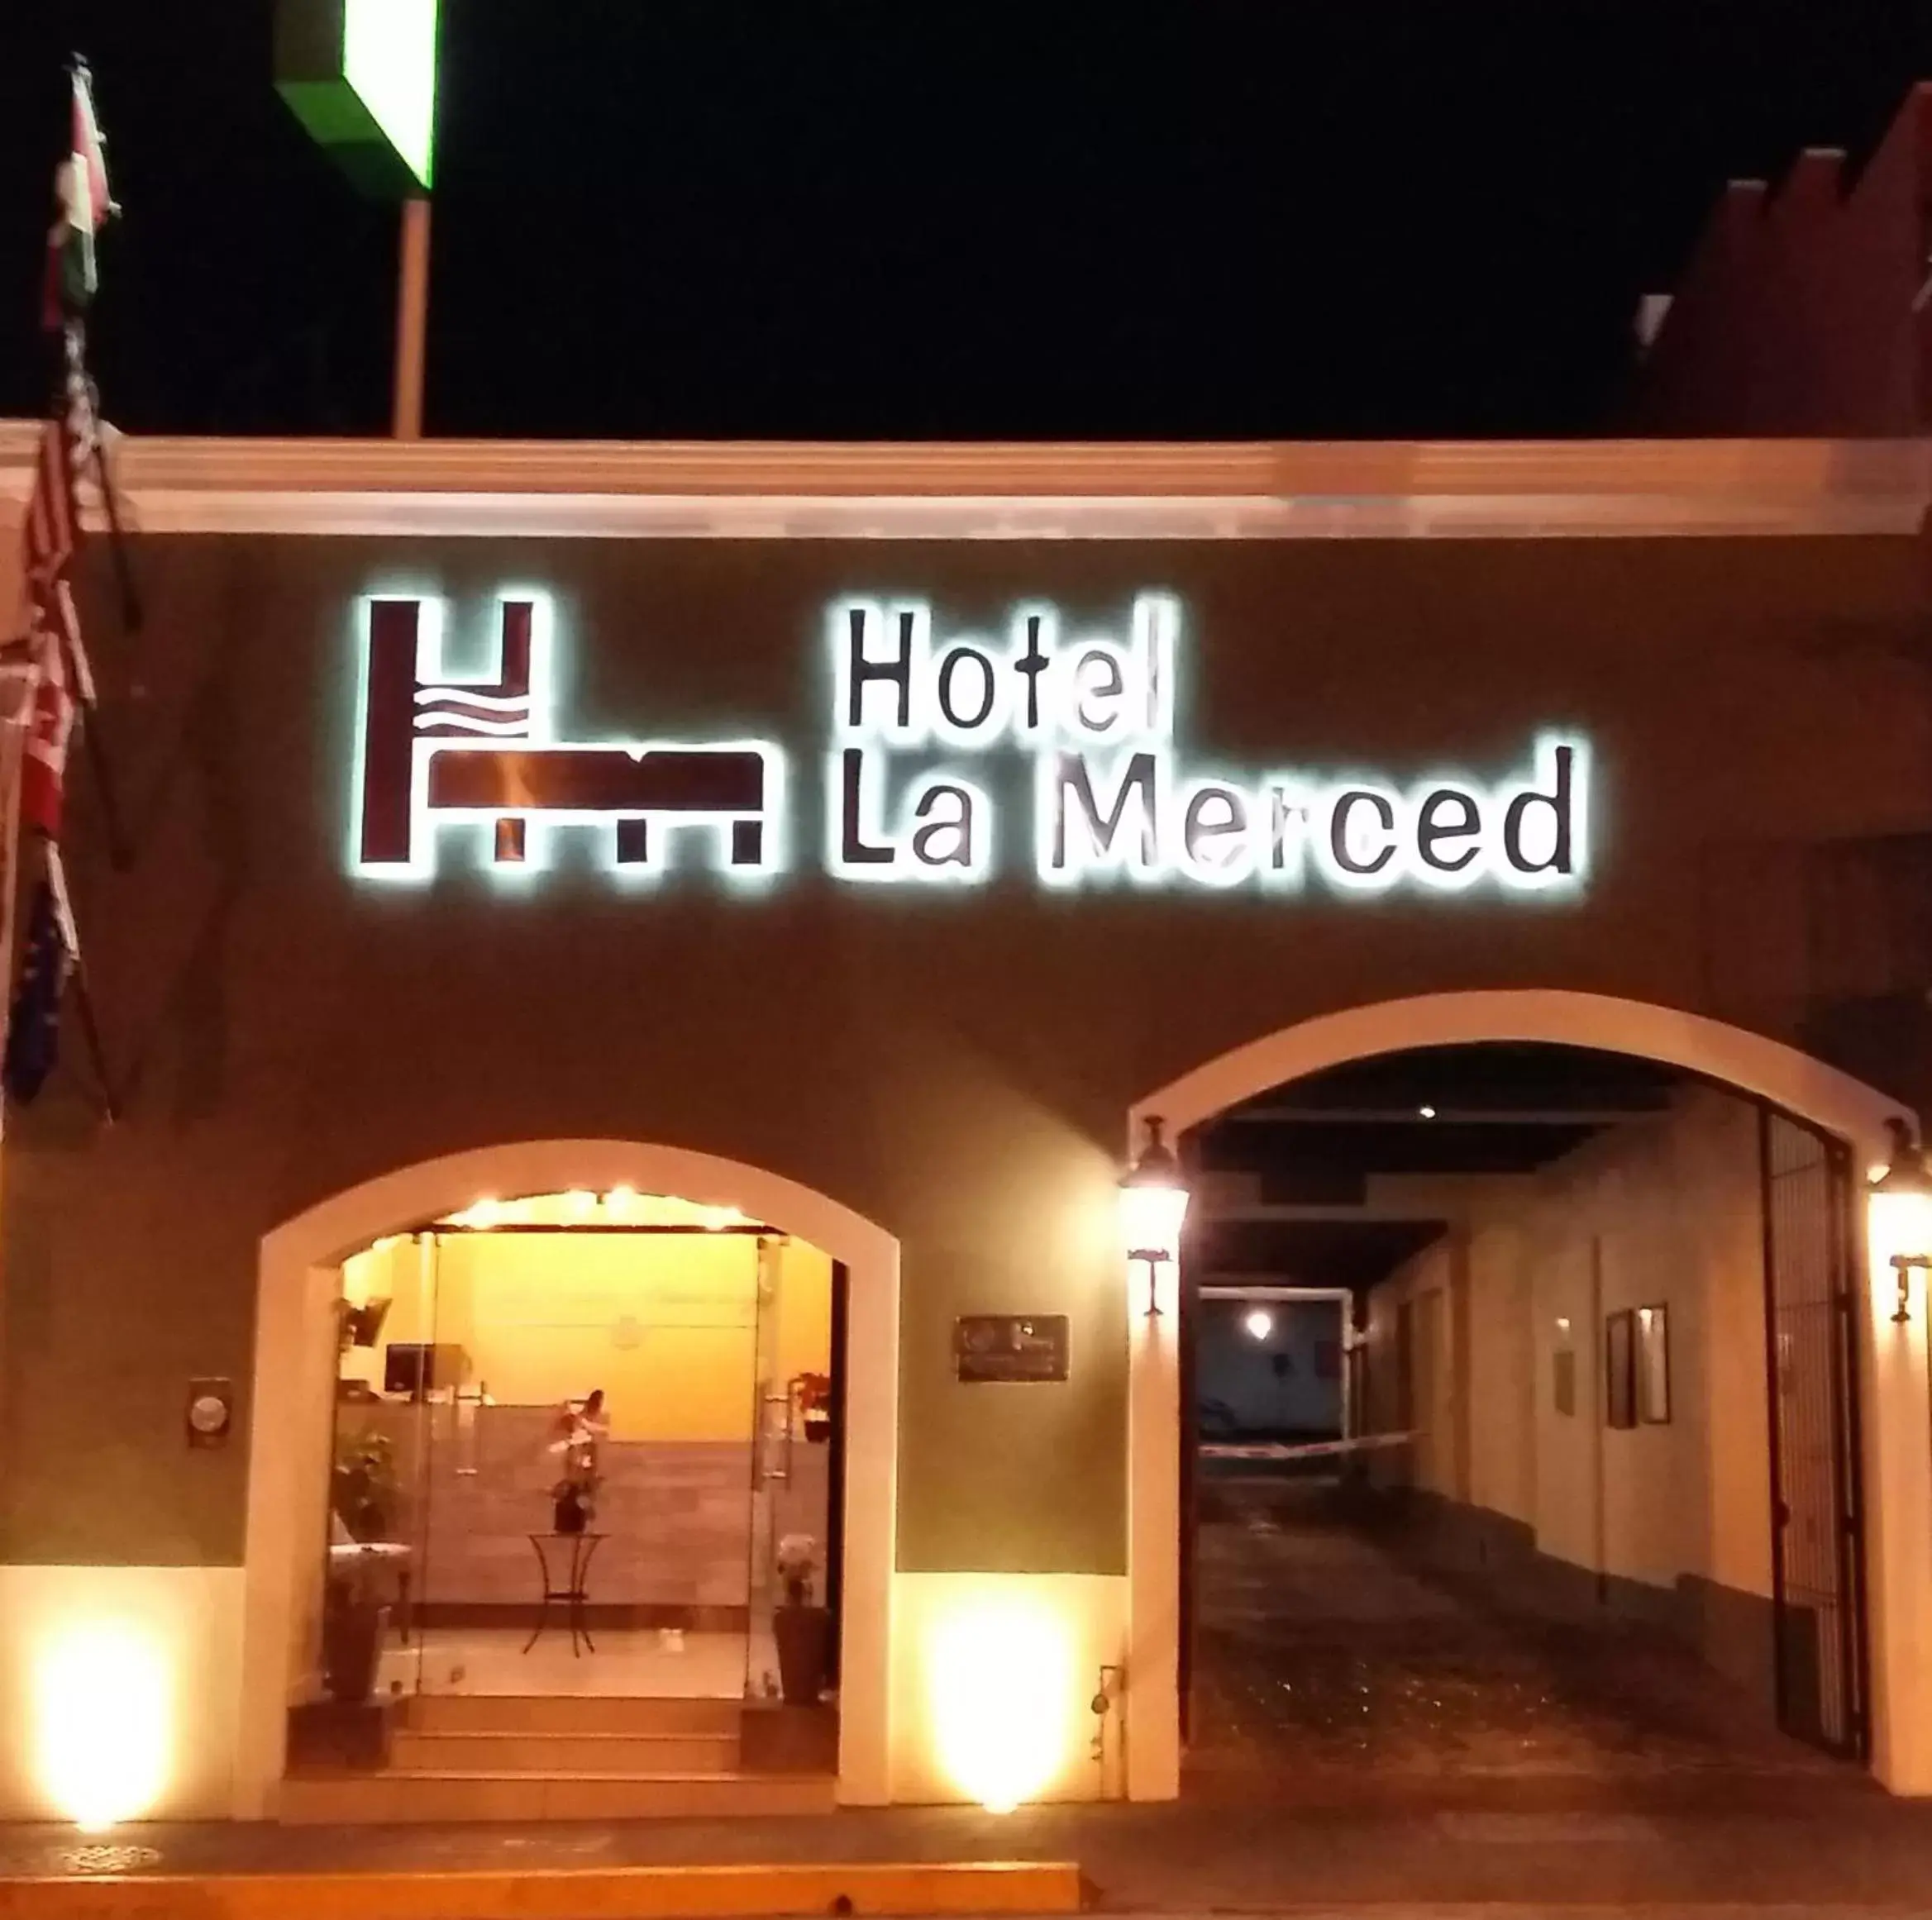 Facade/entrance in Hotel La Merced